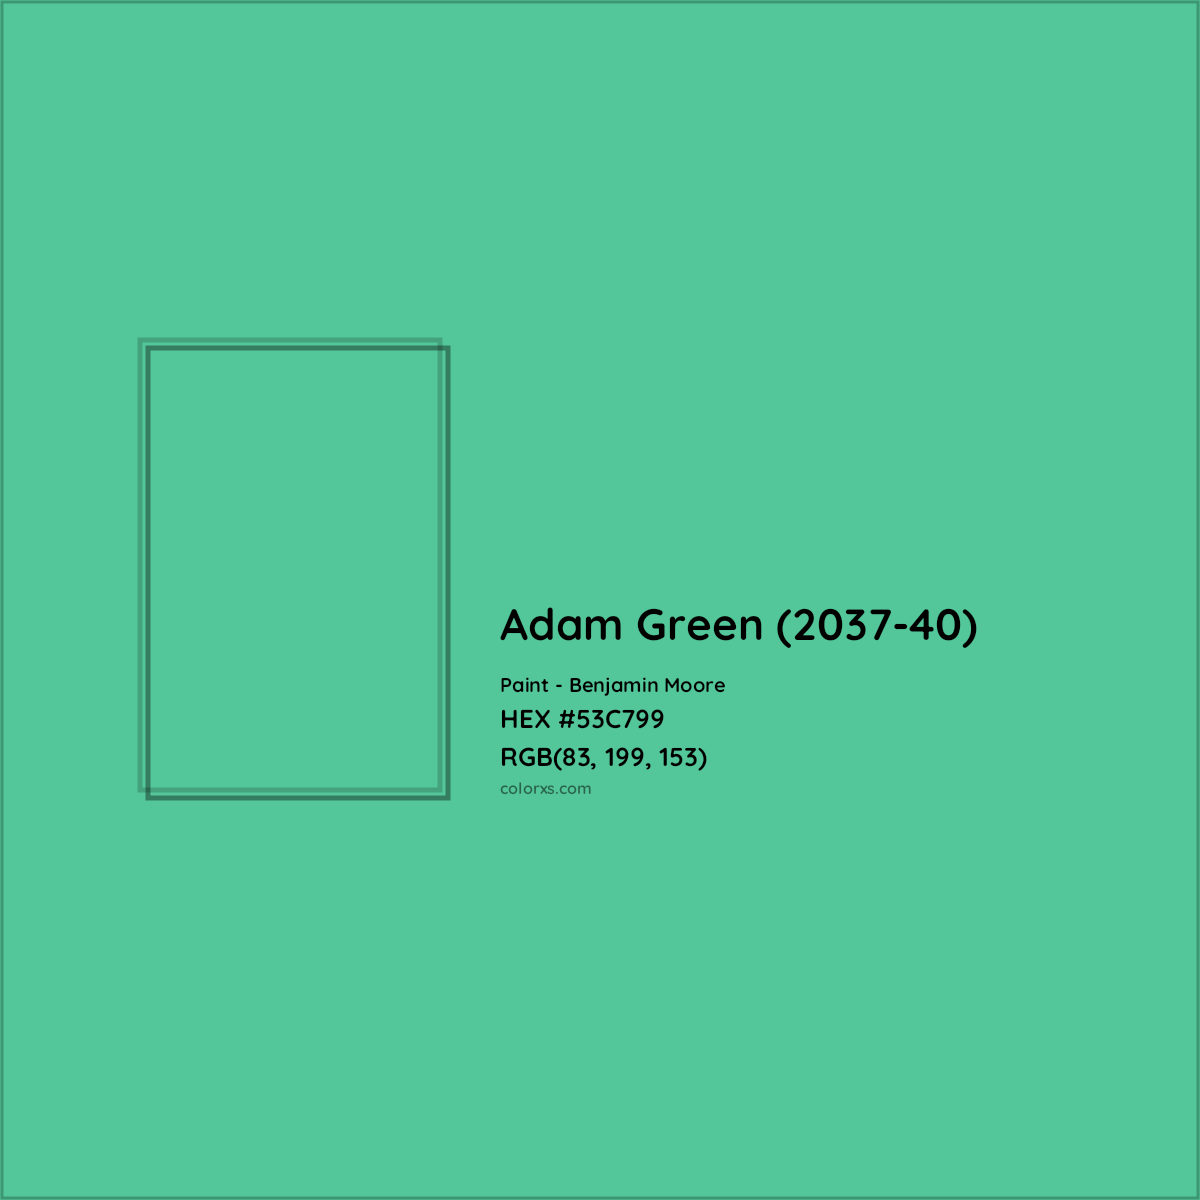 HEX #53C799 Adam Green (2037-40) Paint Benjamin Moore - Color Code